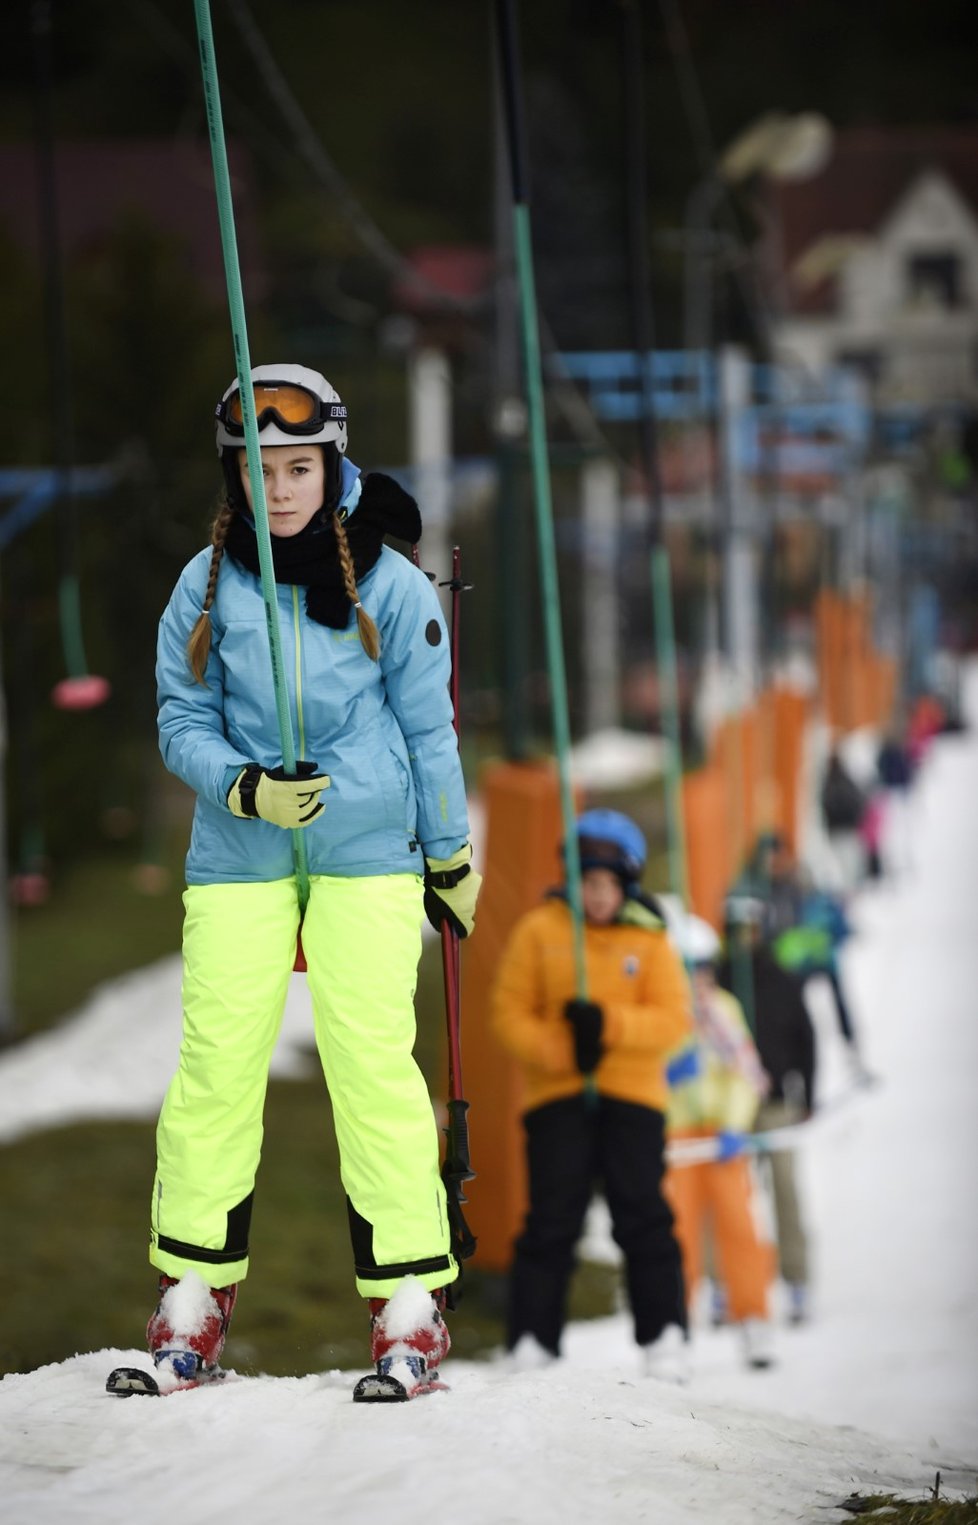 Lyžaři 28. prosince 2017 na sjezdovce lyžařského střediska Stupava na Uherskohradišťsku. Lyžování v těchto dnech ve Zlínském kraji nepřeje počasí. Vysoké teploty a déšť odrazují návštěvníky zimních areálů, přestože na sjezdovkách stále panují slušné podmínky.